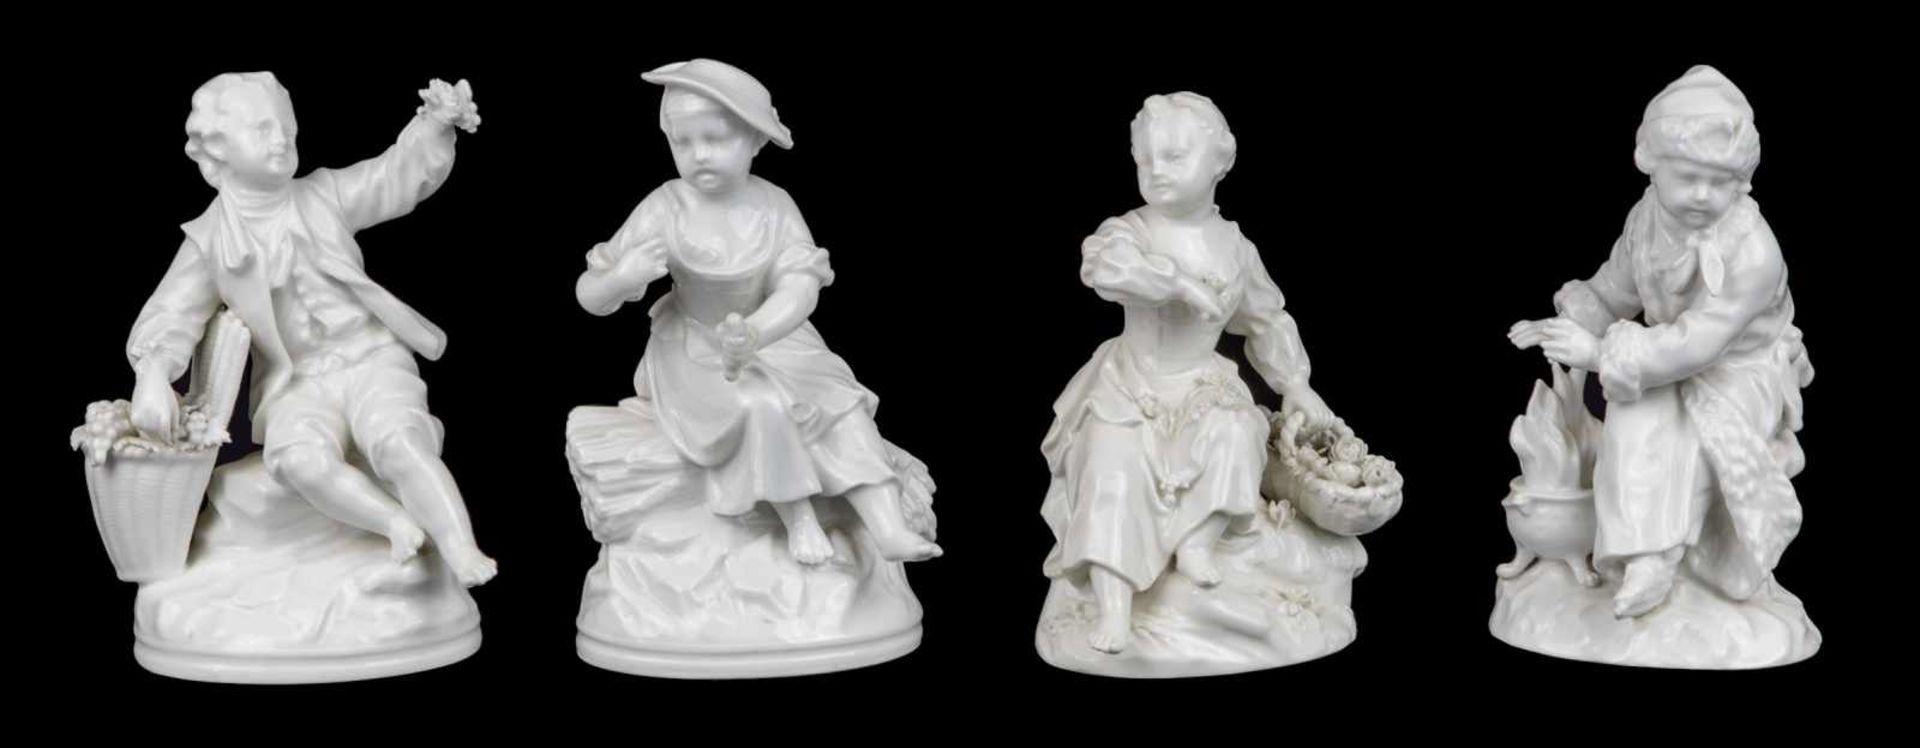 KPM BERLIN, (avant 1837)Allégorie des 4 SaisonsSuite de 4 statuettes en porcelaine blanche